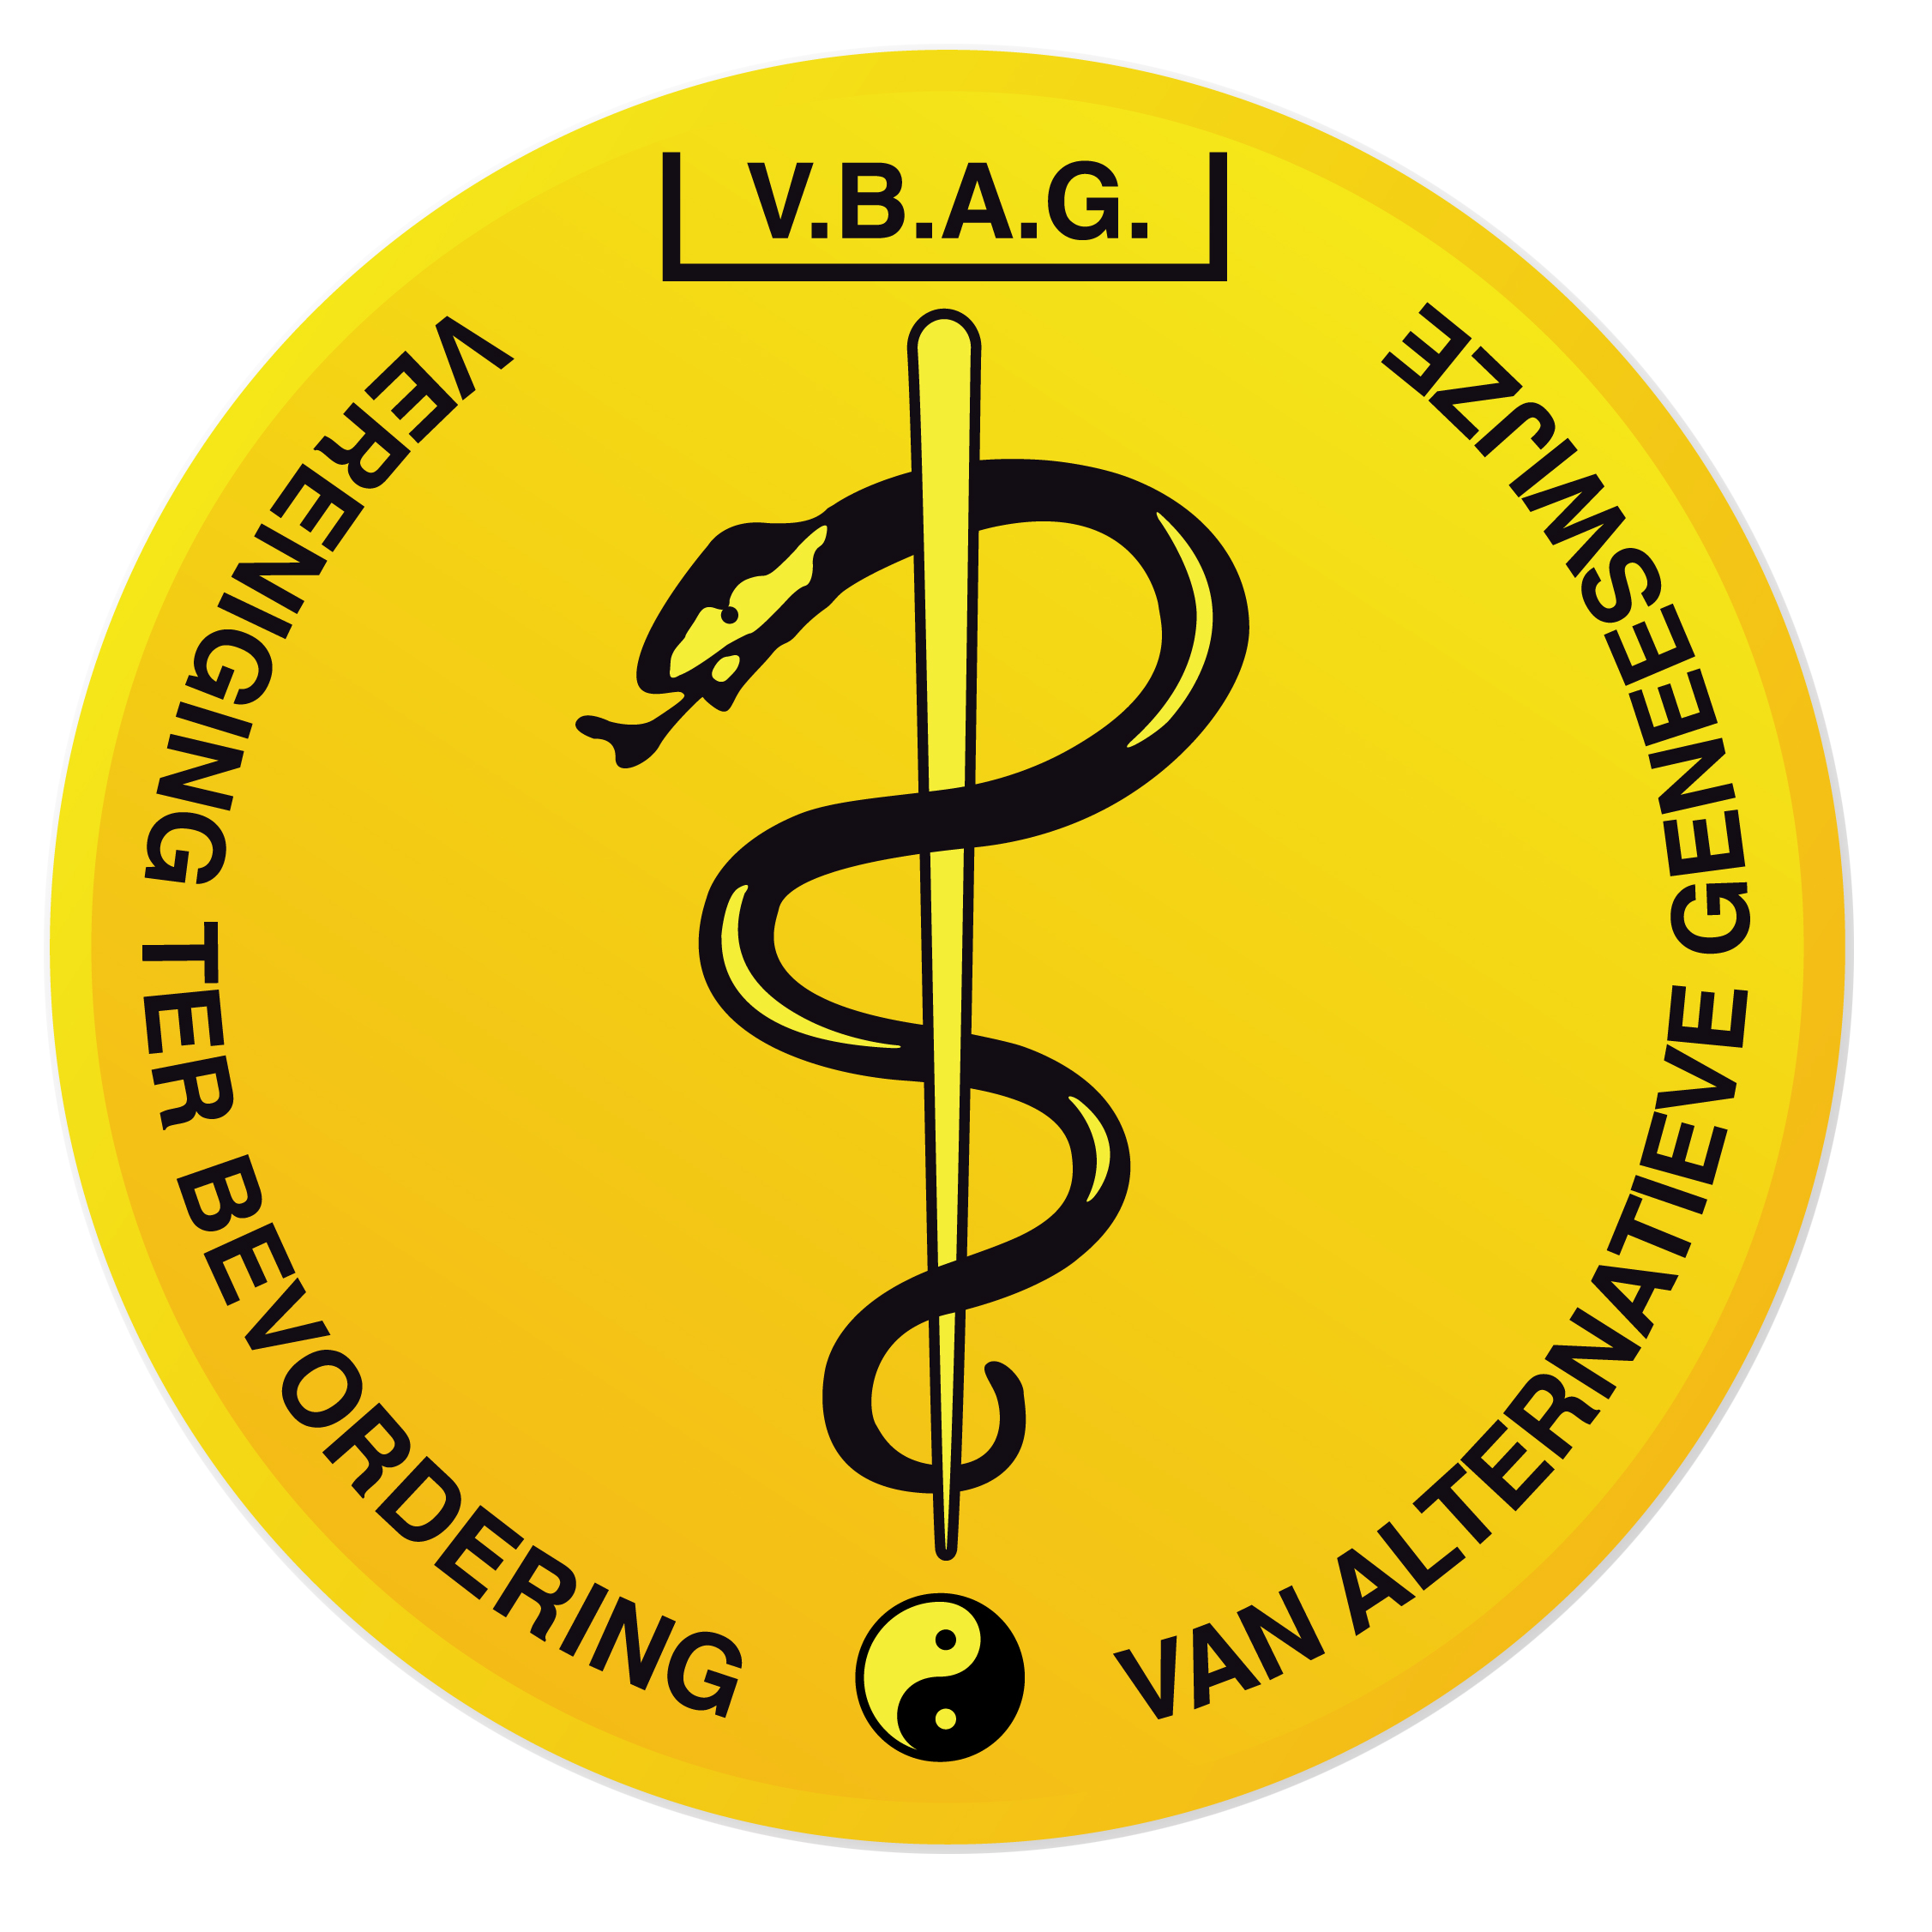 VBAG logo 2014 zonder wit vlak - Theflex